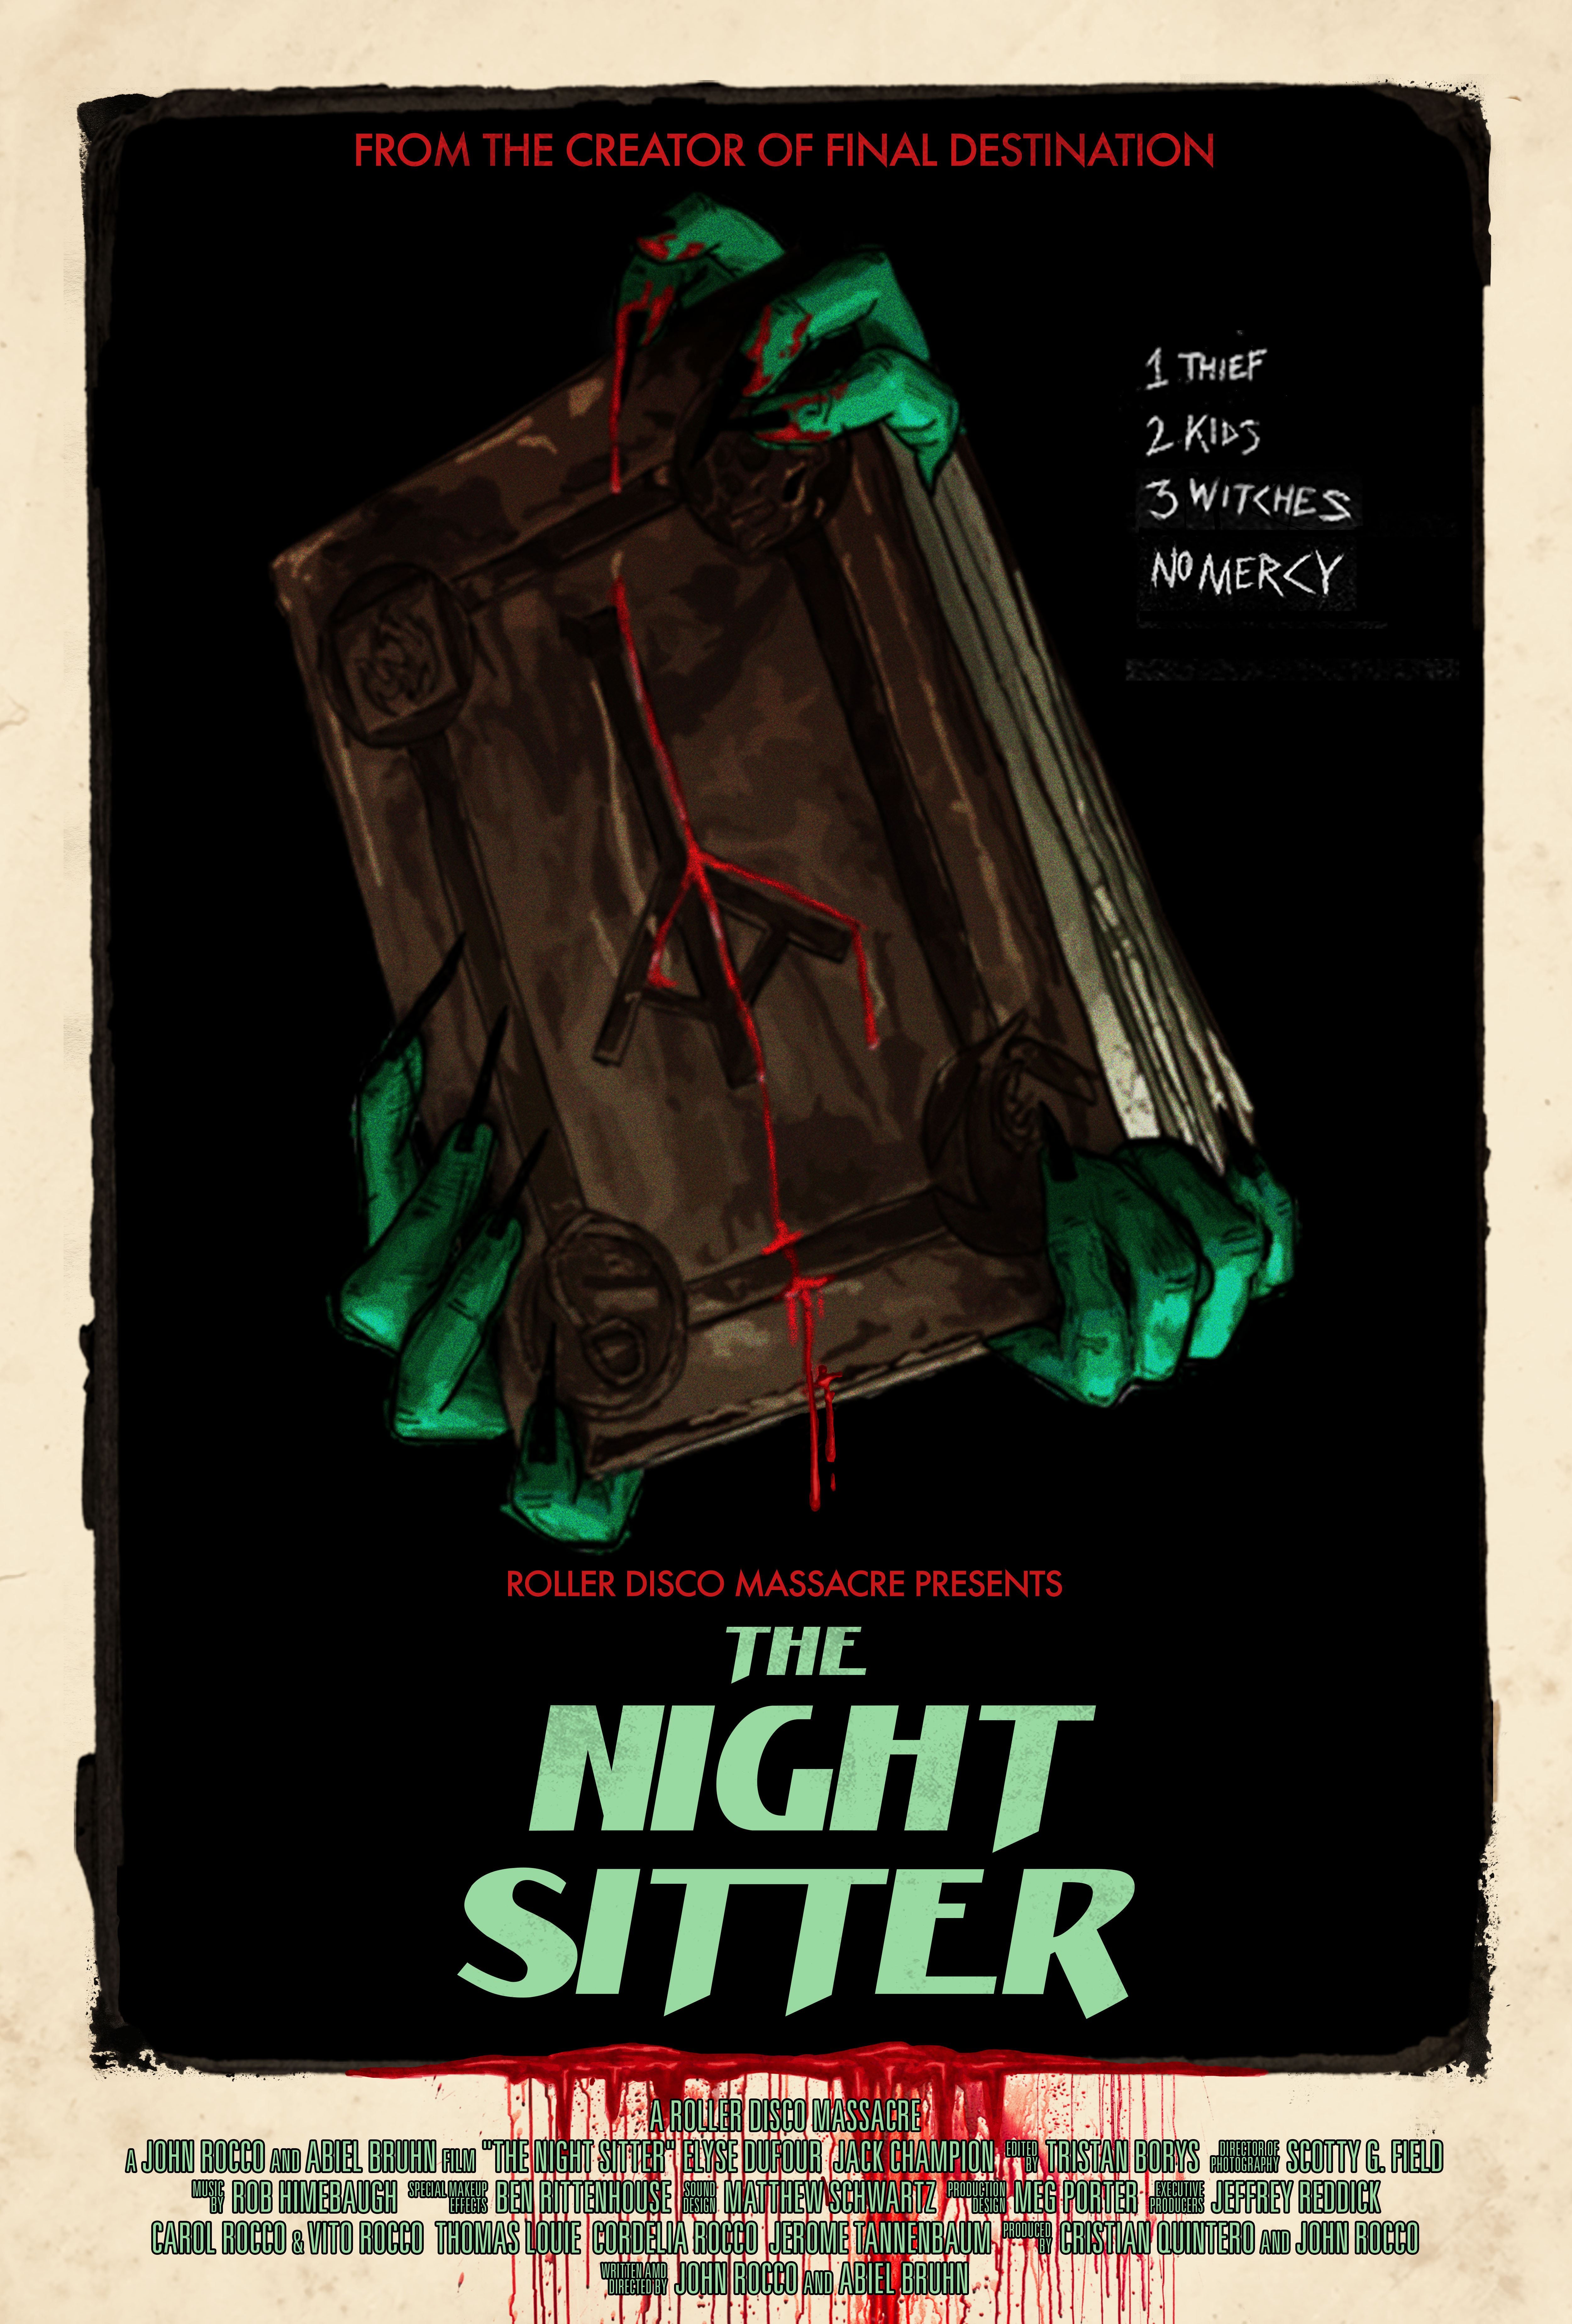 Nonton film The Night Sitter layarkaca21 indoxx1 ganool online streaming terbaru